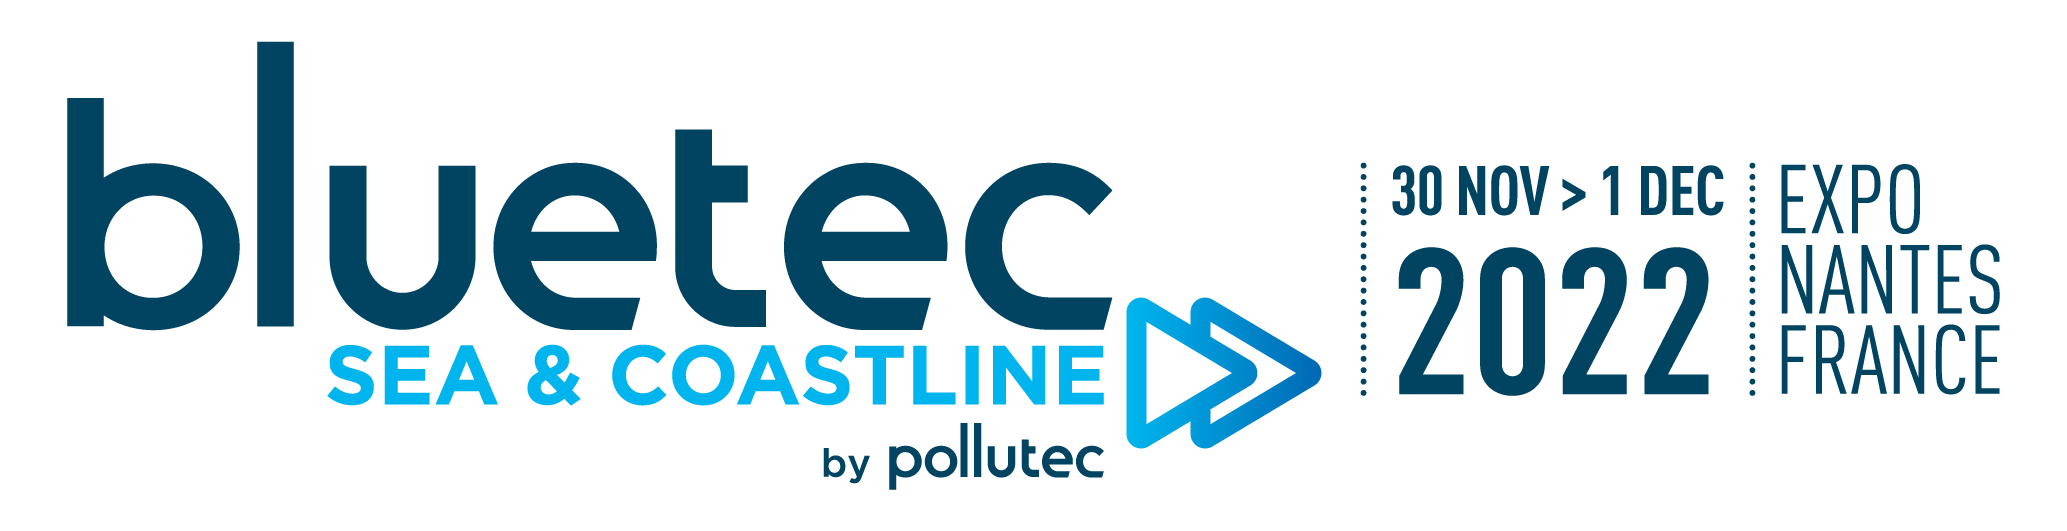 Bluetec sea & coastline by Pollutec - 30 nov > 1 dec - Nantes